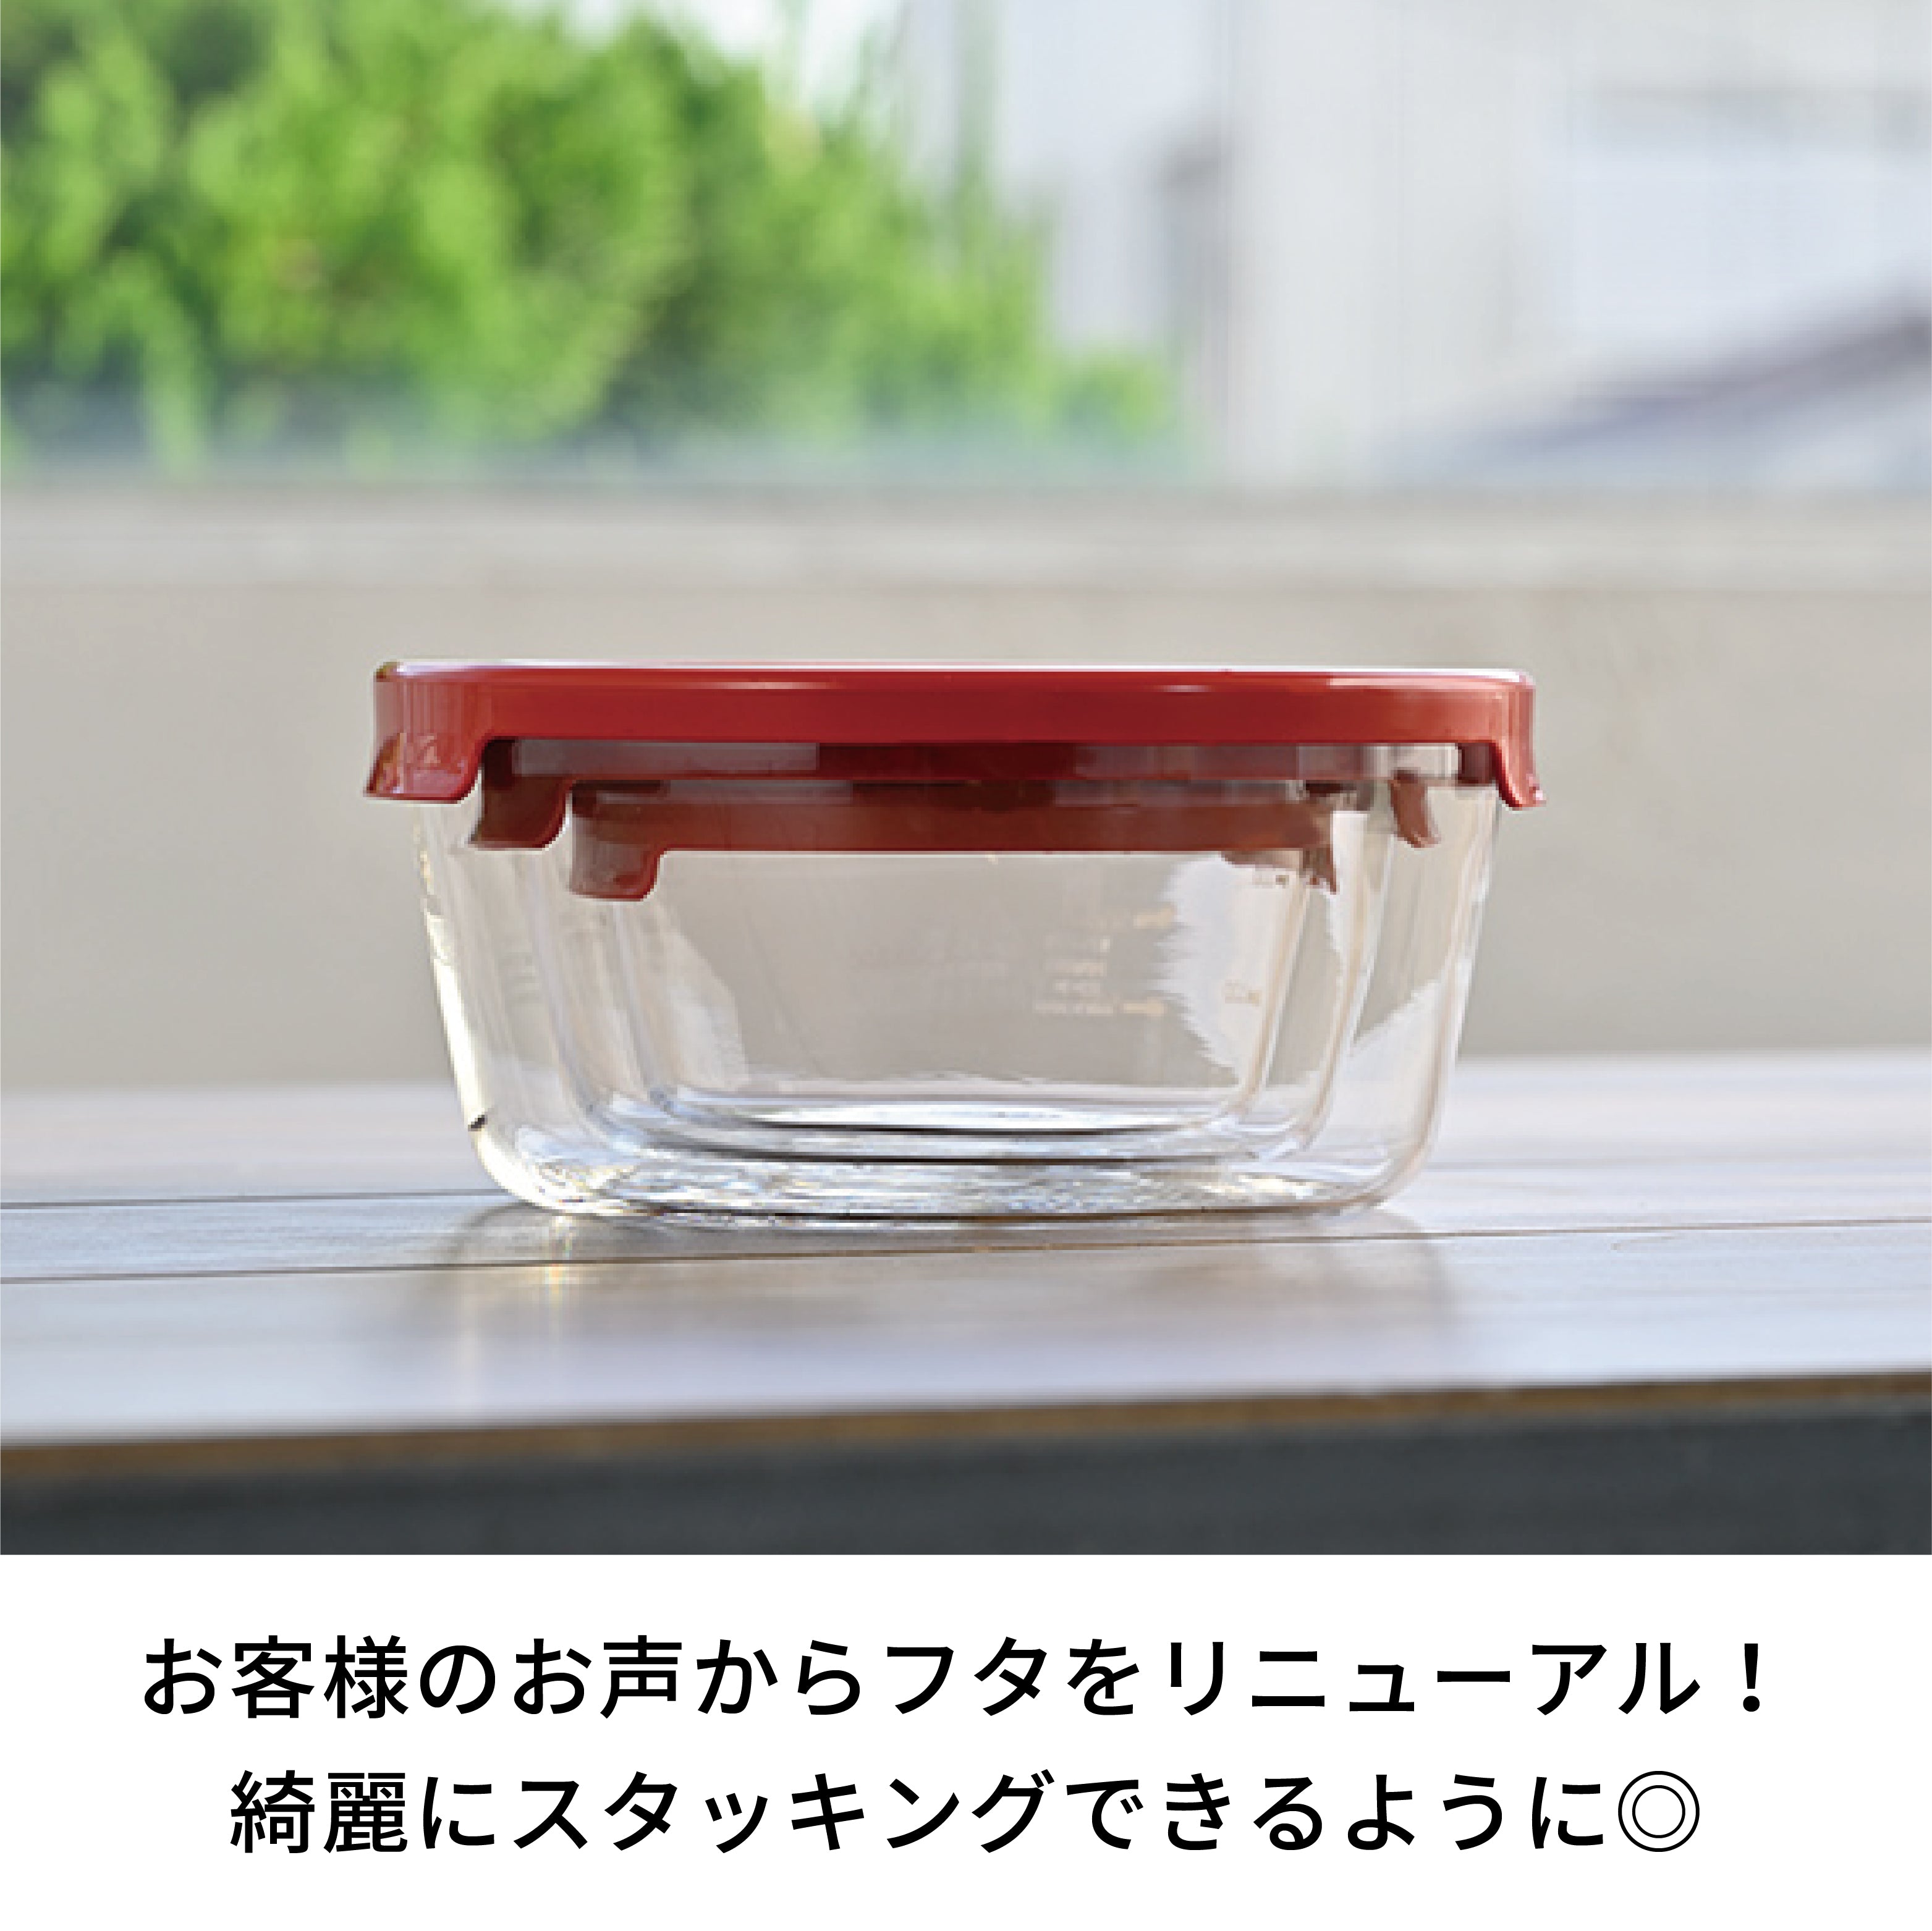 耐熱ガラス製保存容器丸3個セット – HARIO NETSHOP